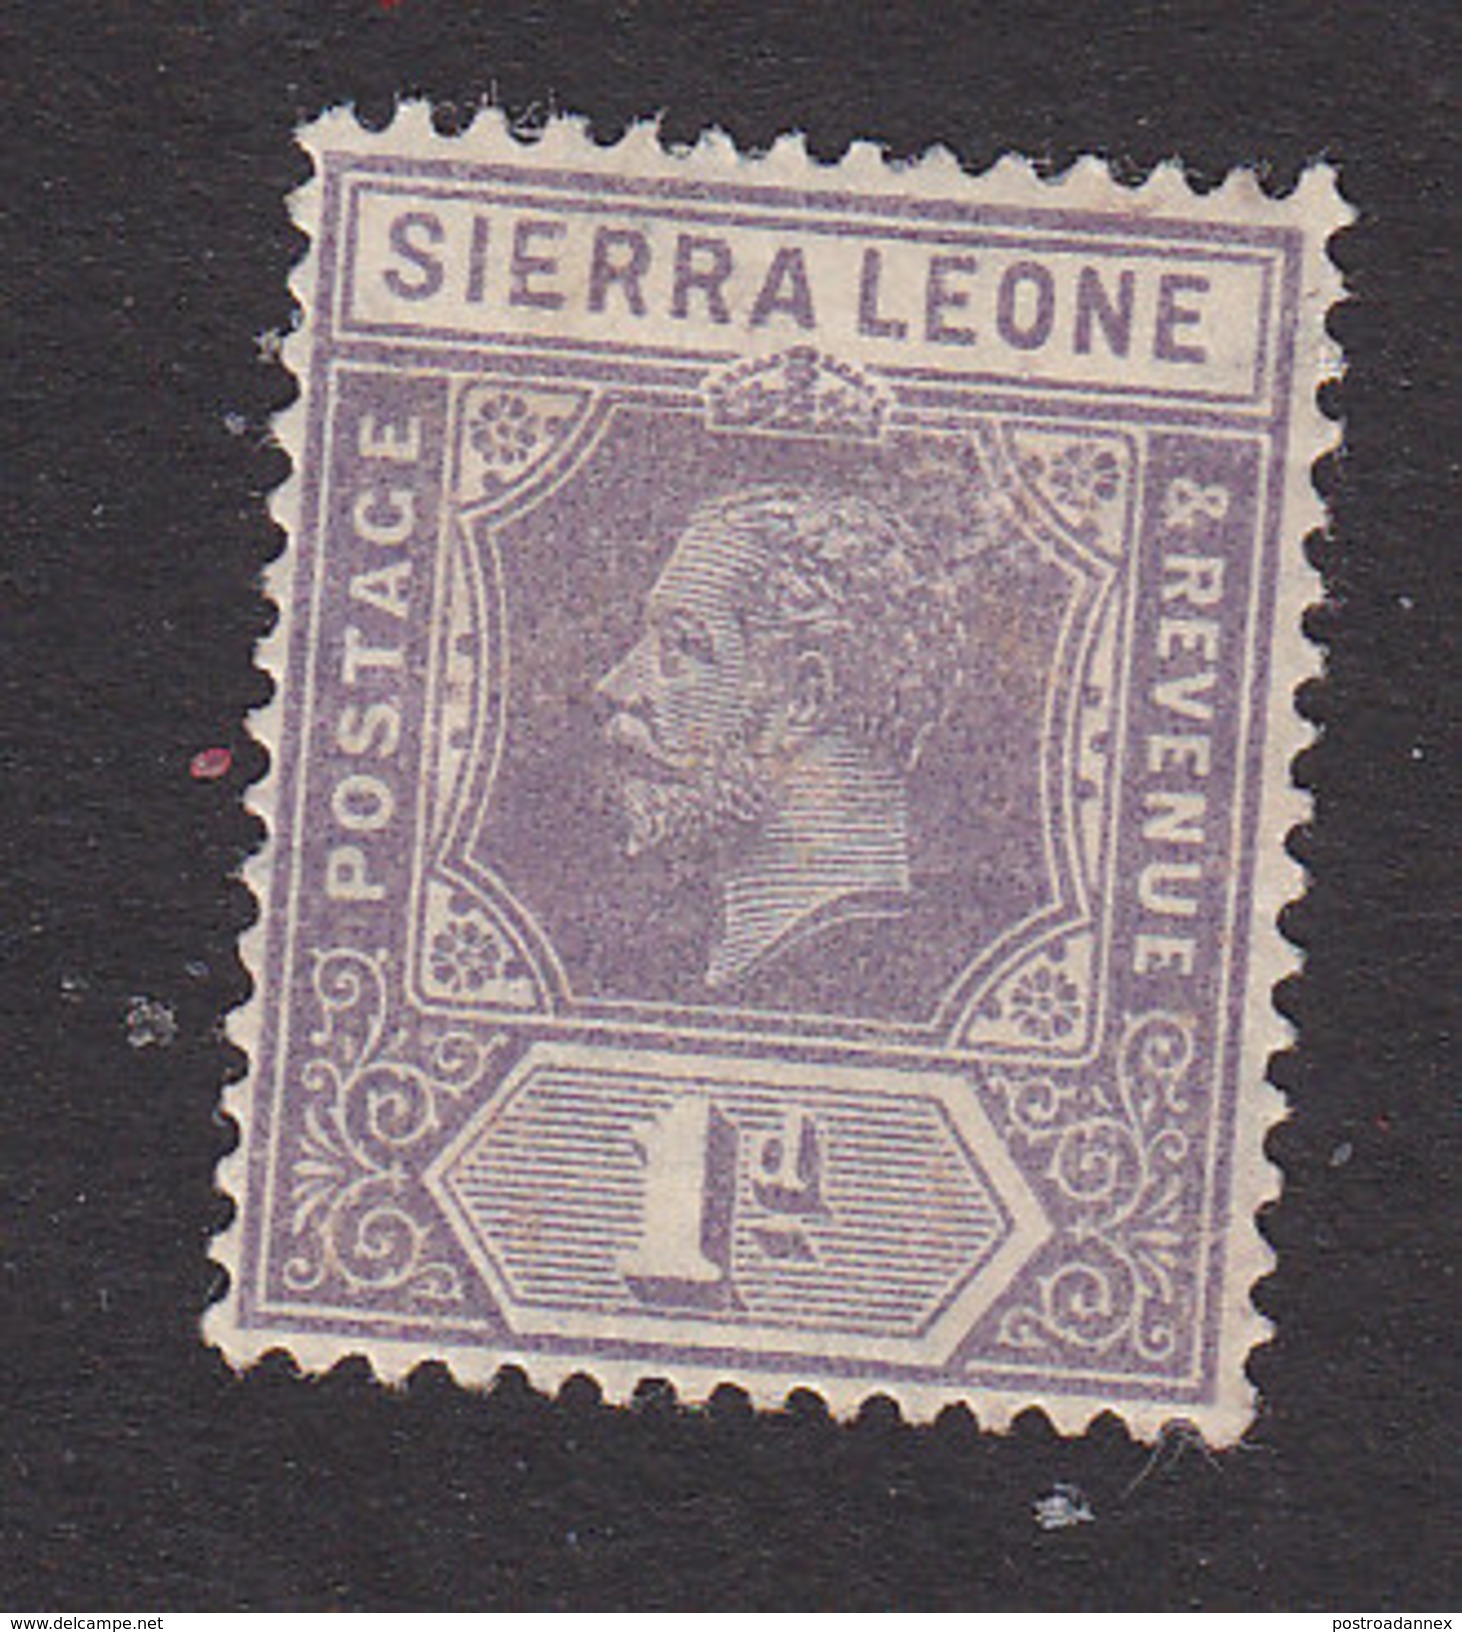 Sierra Leone, Scott #123, Mint Hinged, King George V, Issued 1921 - Sierra Leone (...-1960)